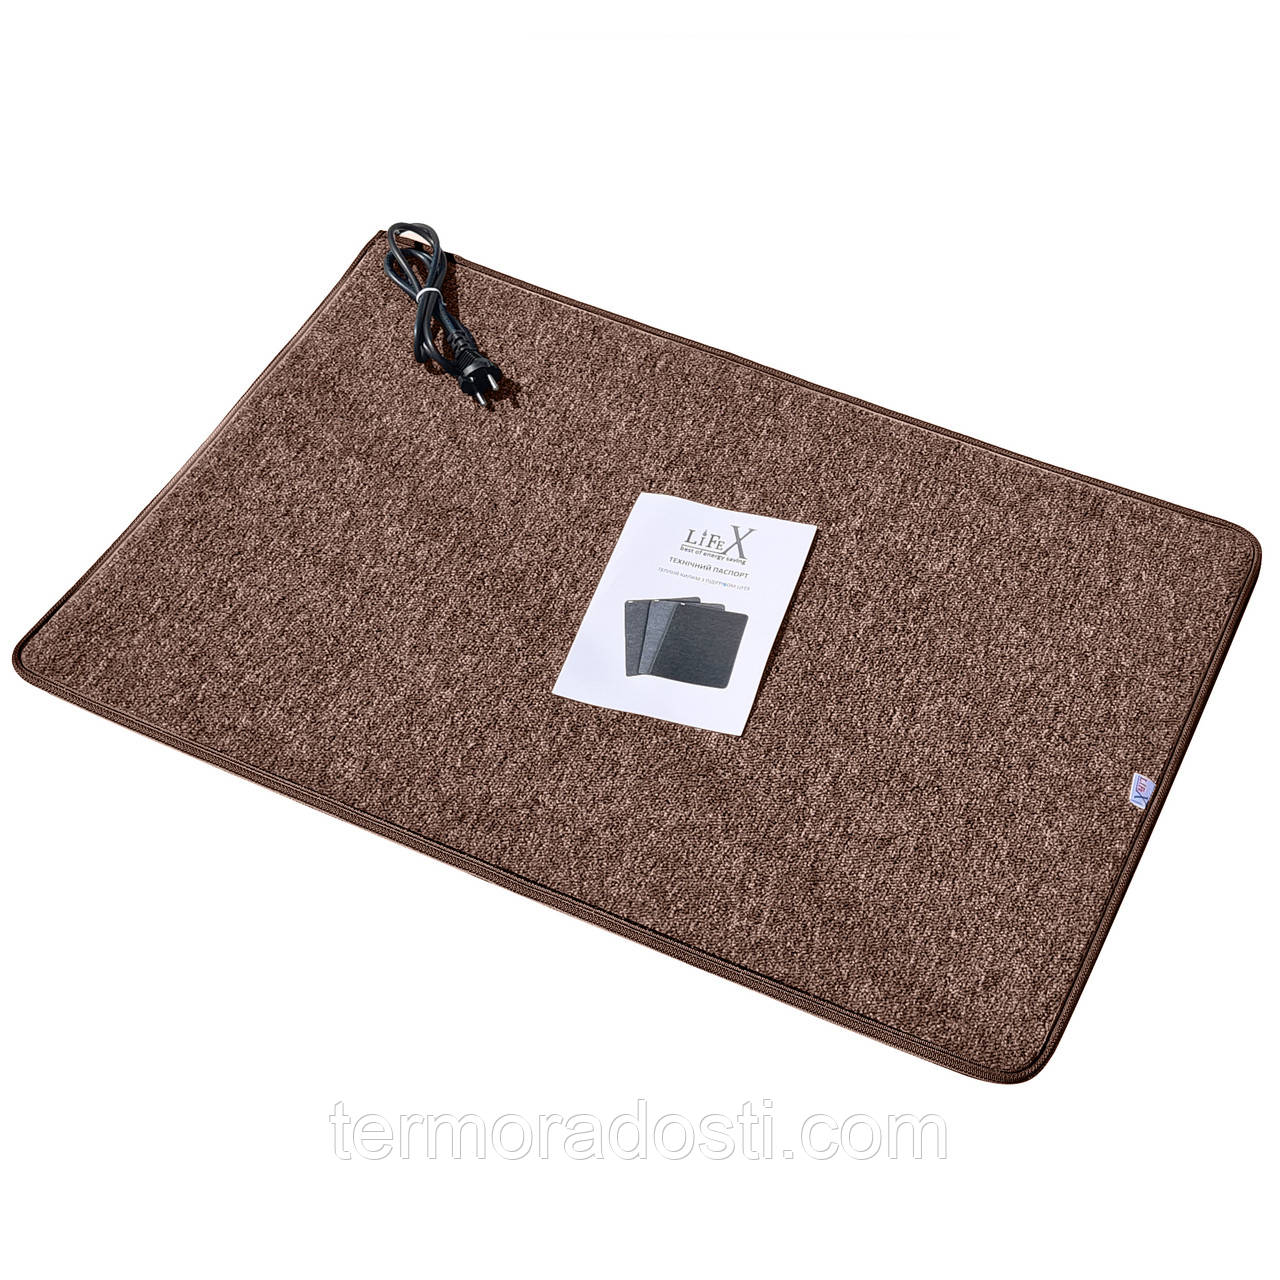 Інфрачервоний килимок з підігрівом LIFEX WC 50x140 Коричневий | Електрокилим для ніг Warm Carpet